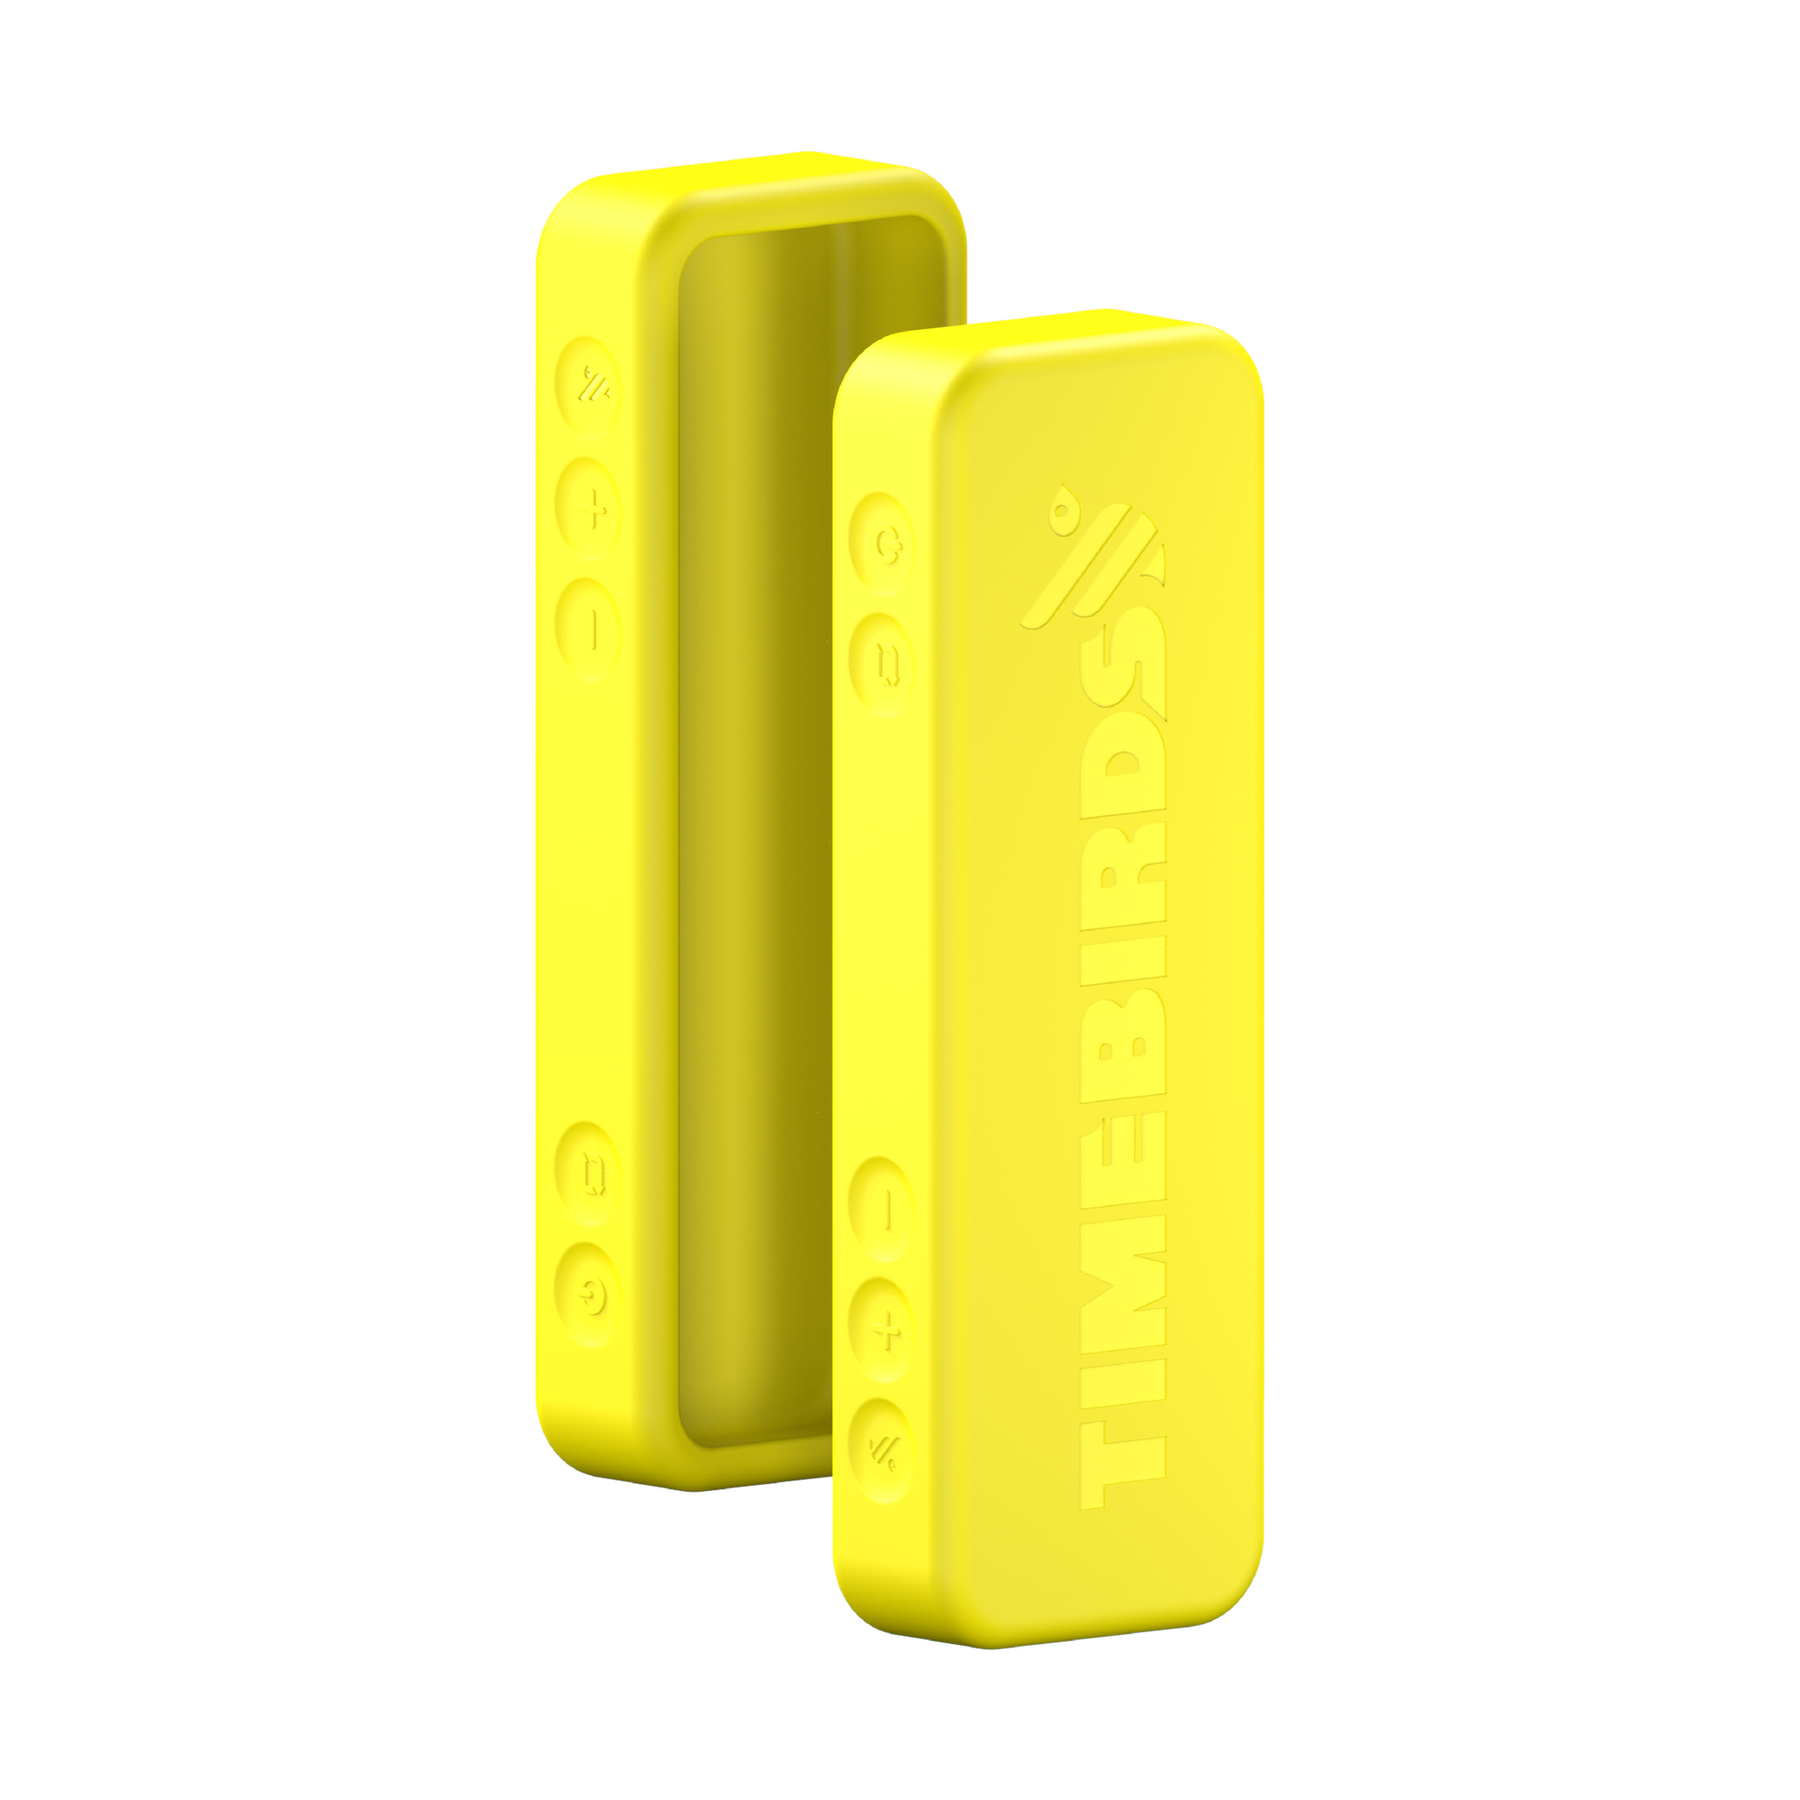 Timebirds™ Protective Case - YOLO Yellow